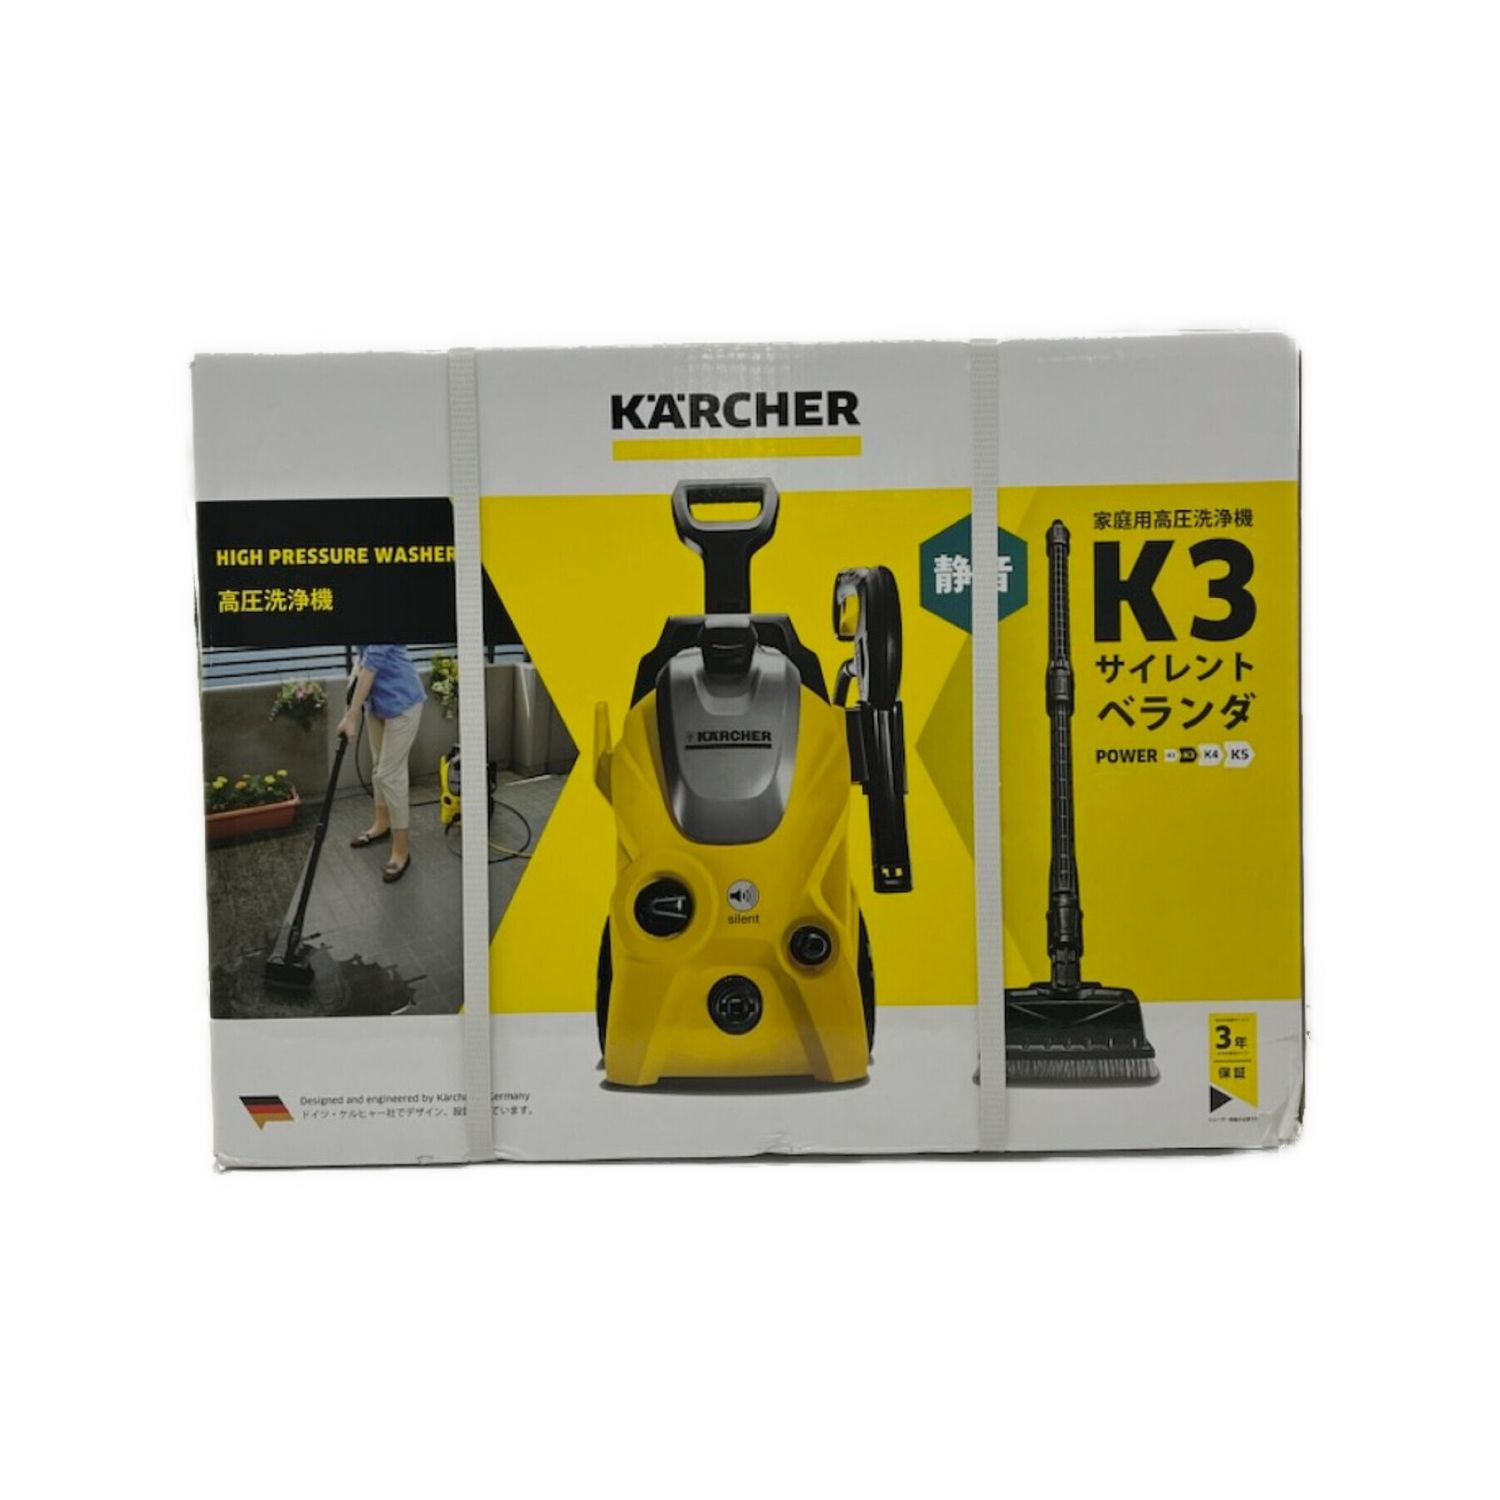 Karcher (ケルヒャー) 高圧洗浄クリーナー K3 サイレントベランダ 程度